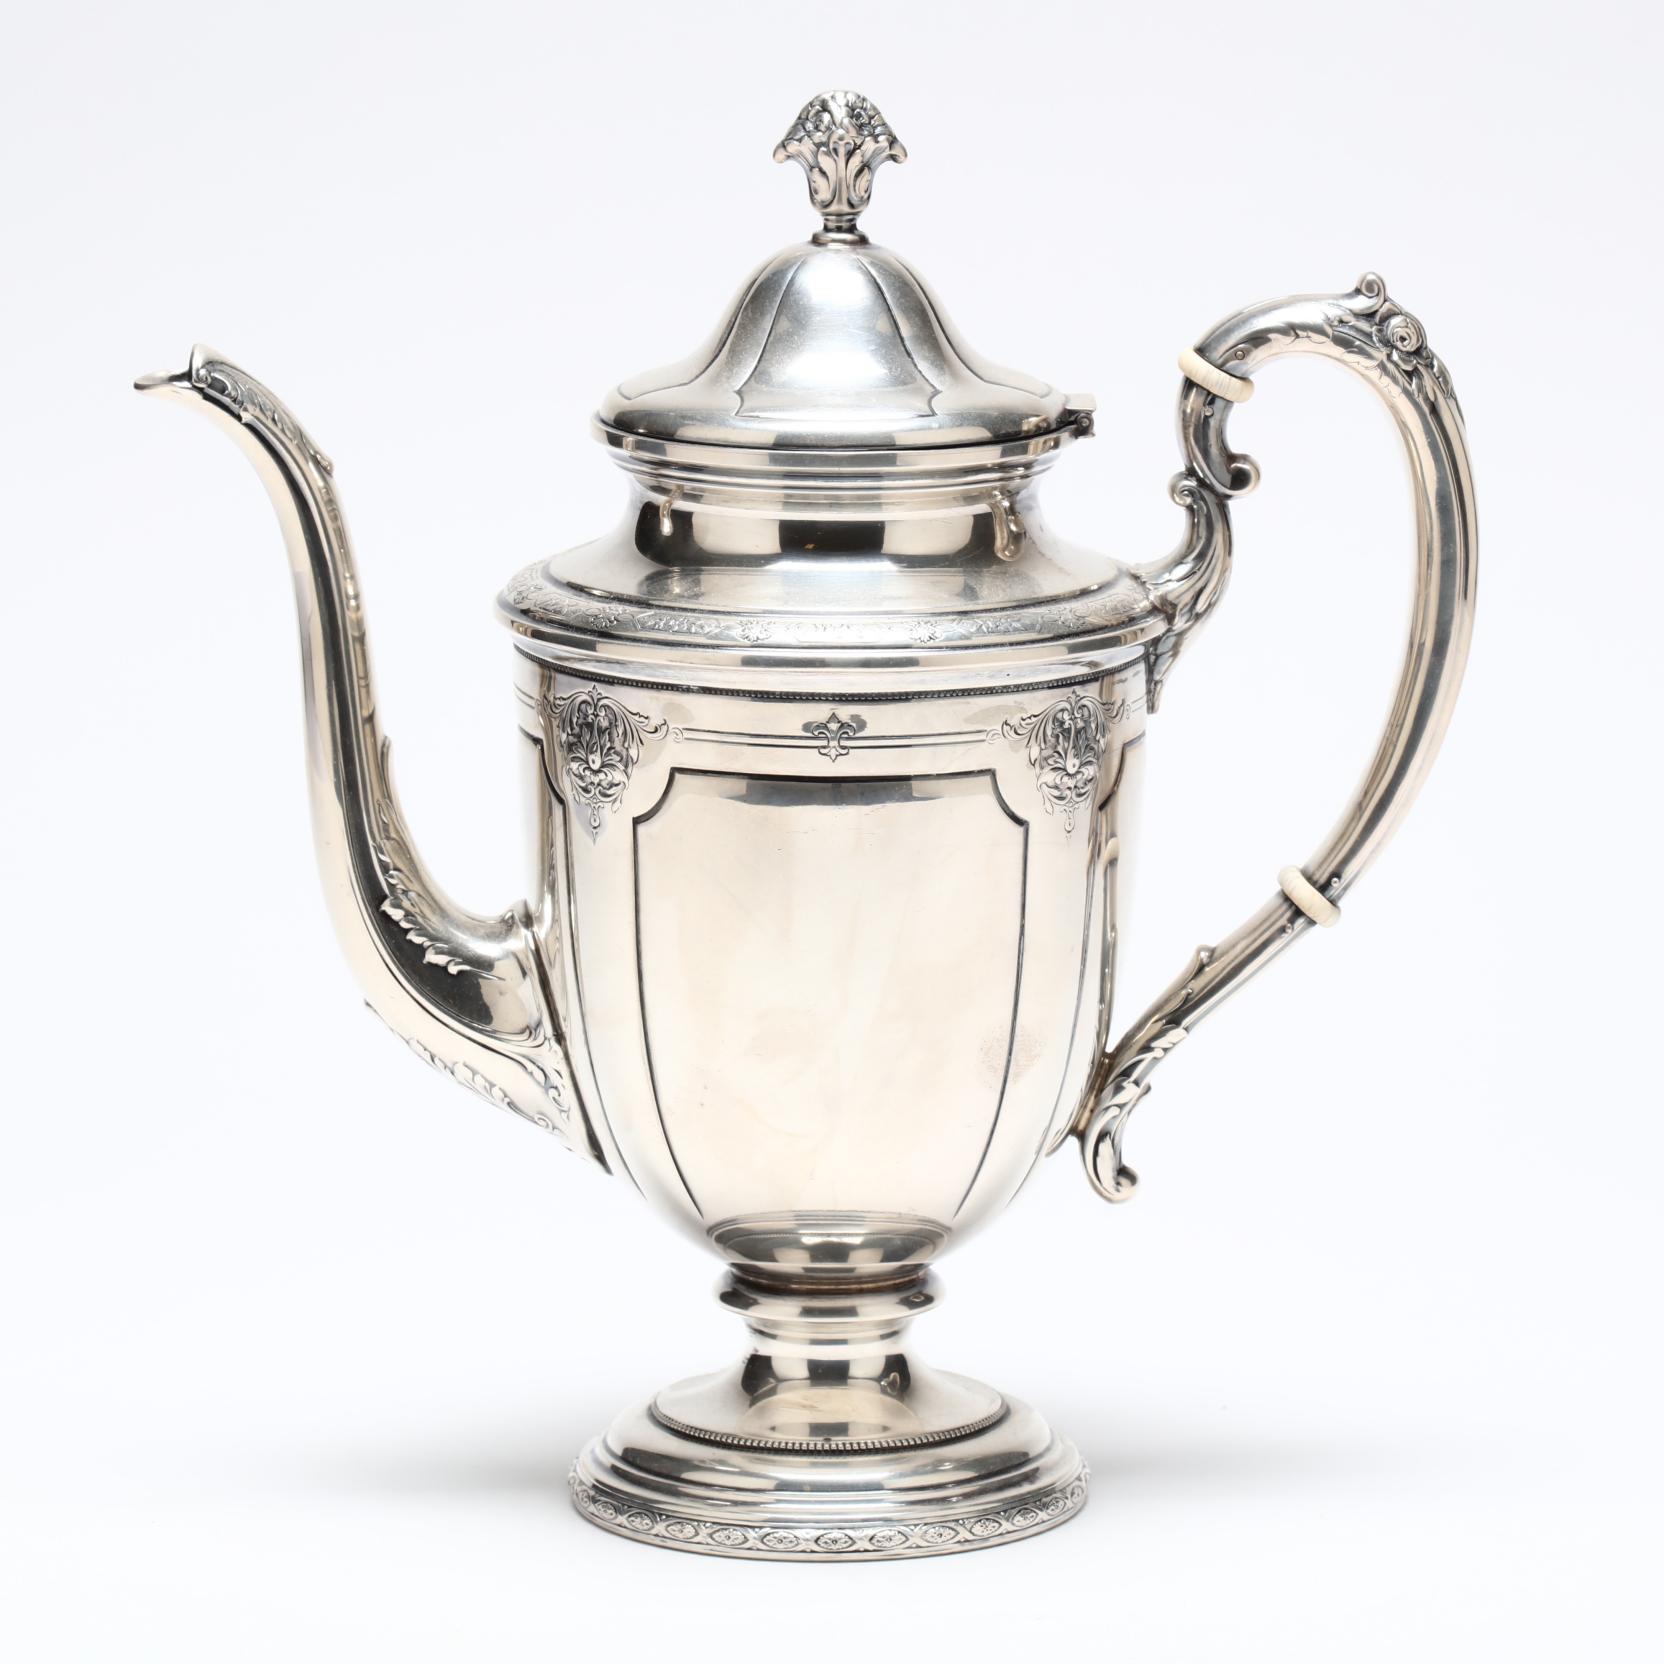 Towle Sterling Silver Coffe Teapot Louis XIV Pattern 61/2 Pint